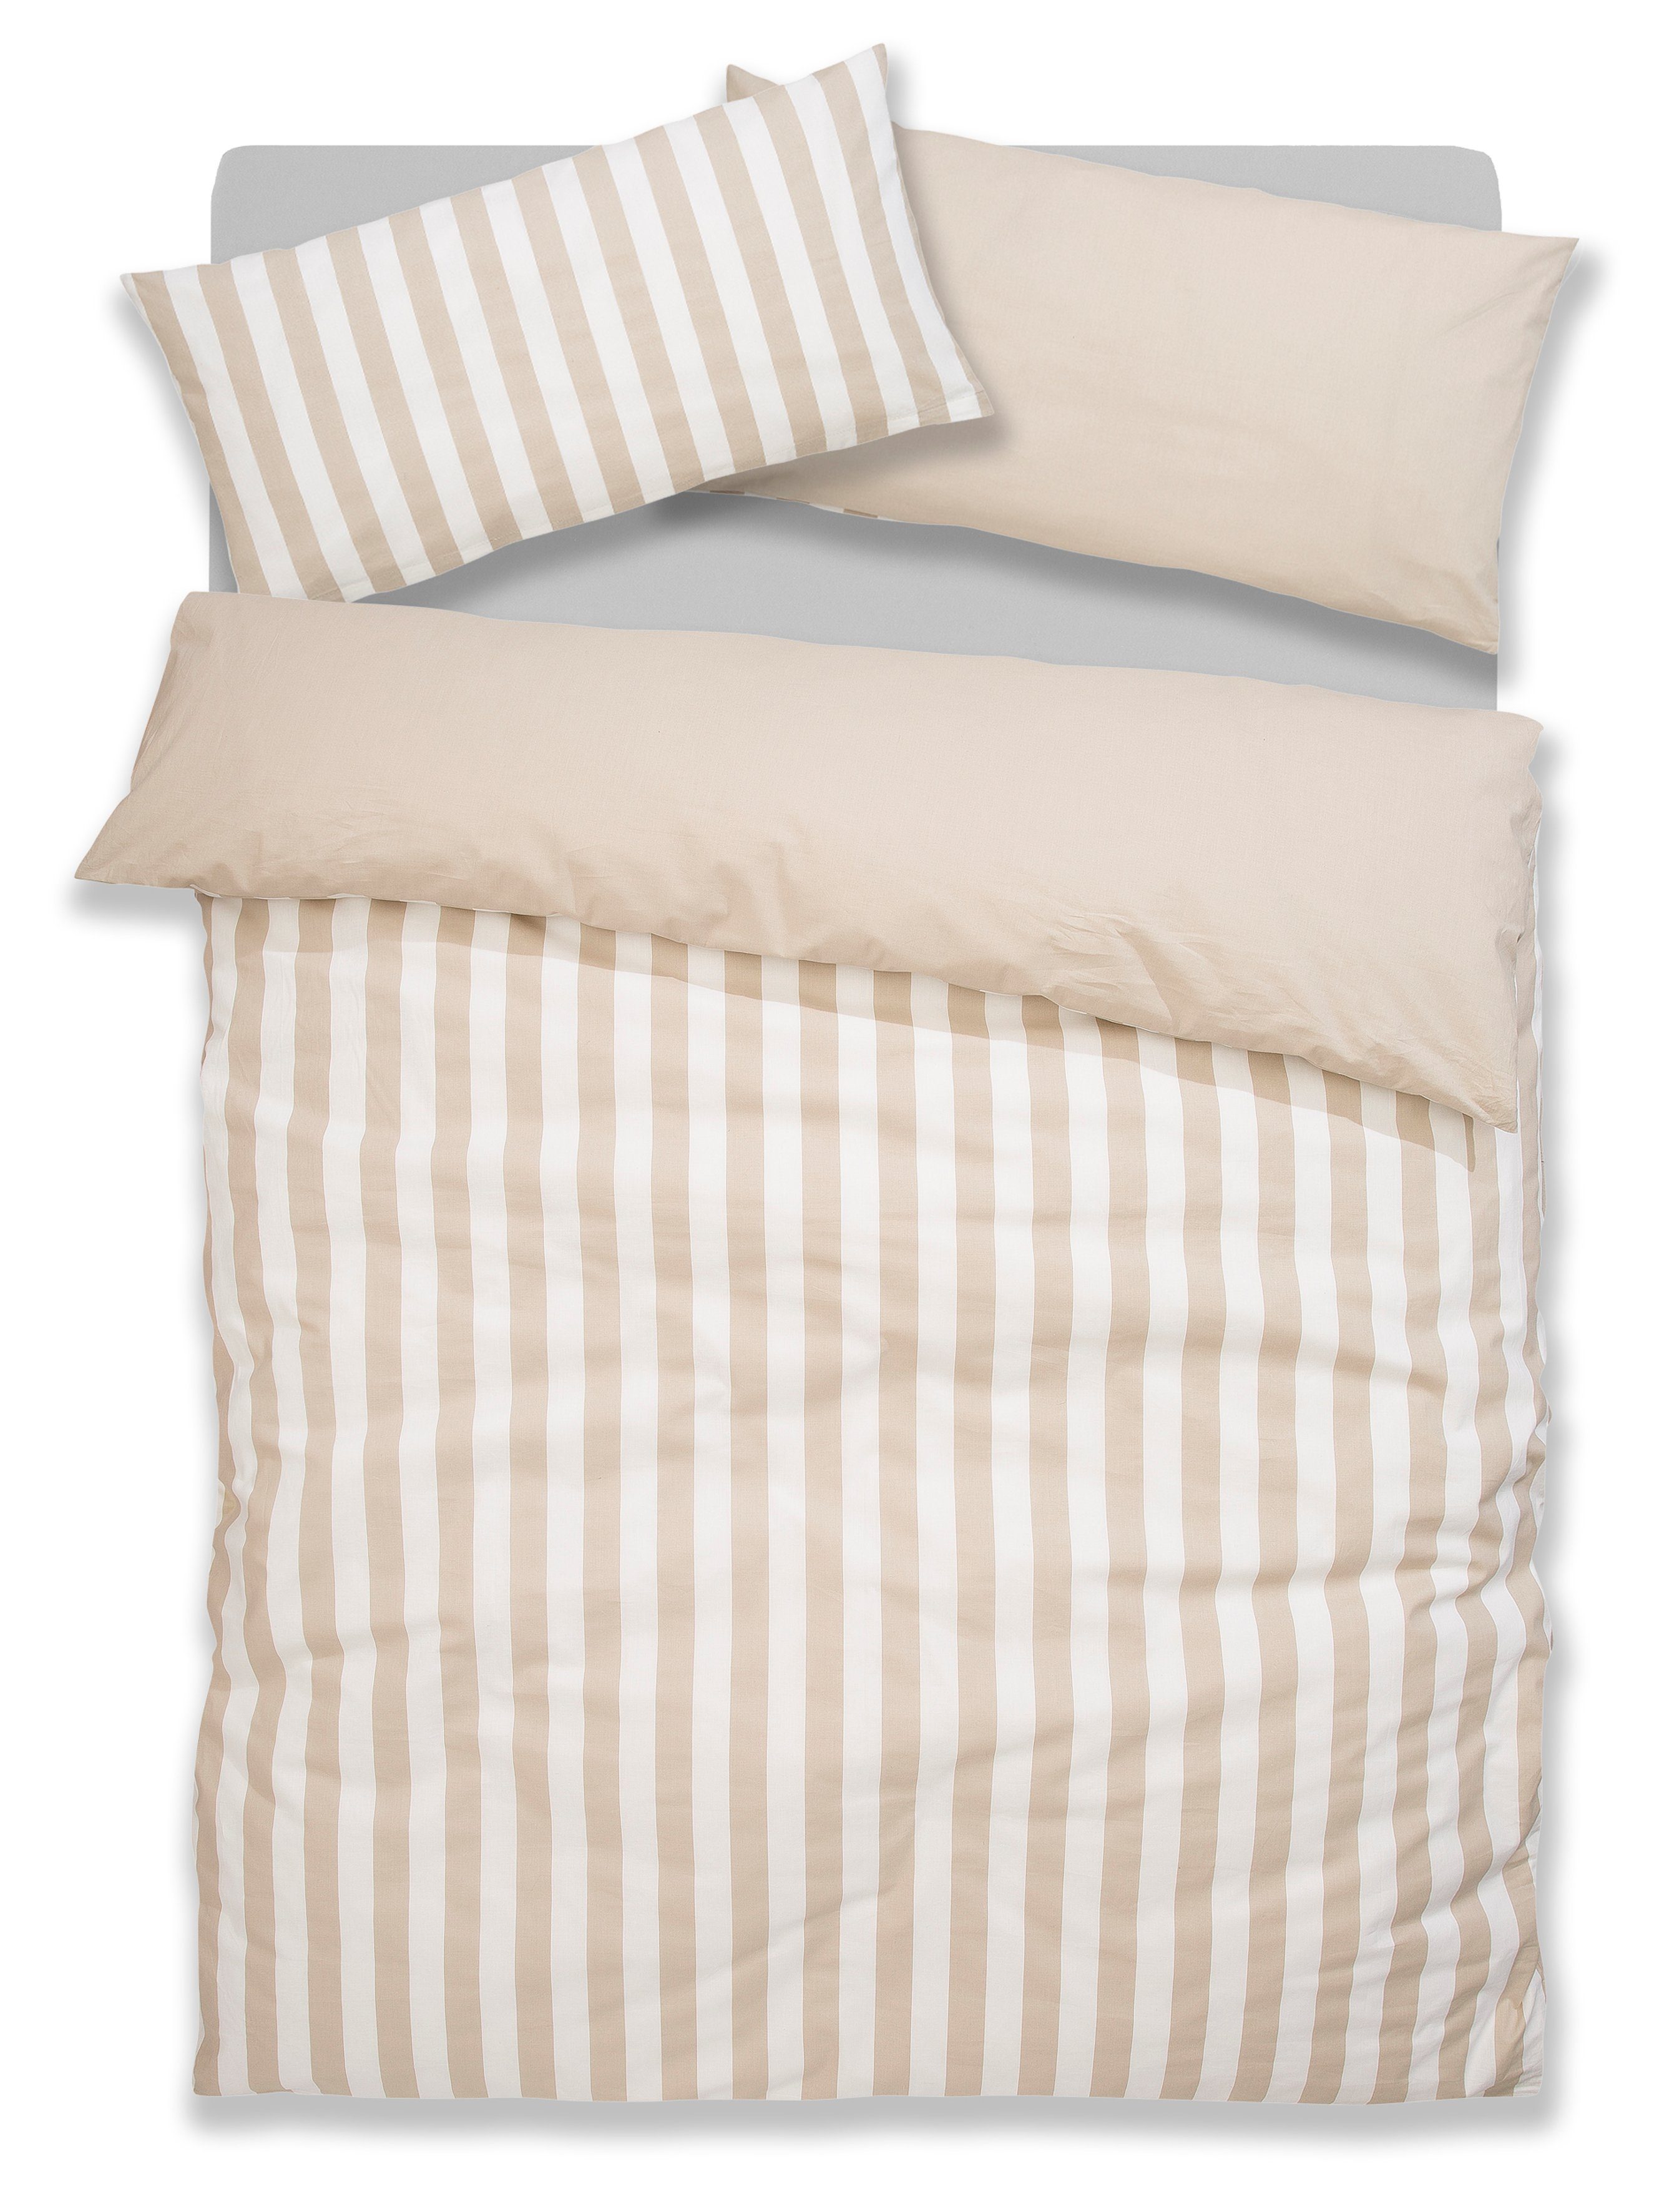 Bettwäsche Serie Greta, andas, Biber, 2 teilig, Baumwolle, Bettwäsche mit  Streifen in verschiedenen Qualitäten